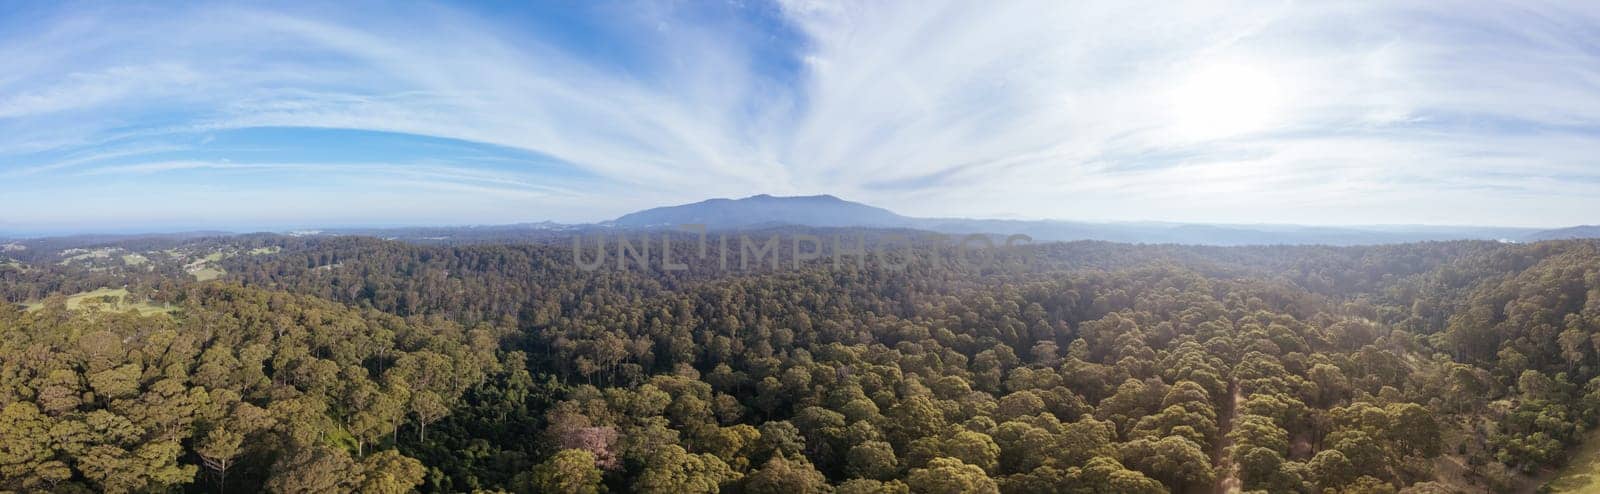 Mount Dromedary near Tilba in Australia by FiledIMAGE